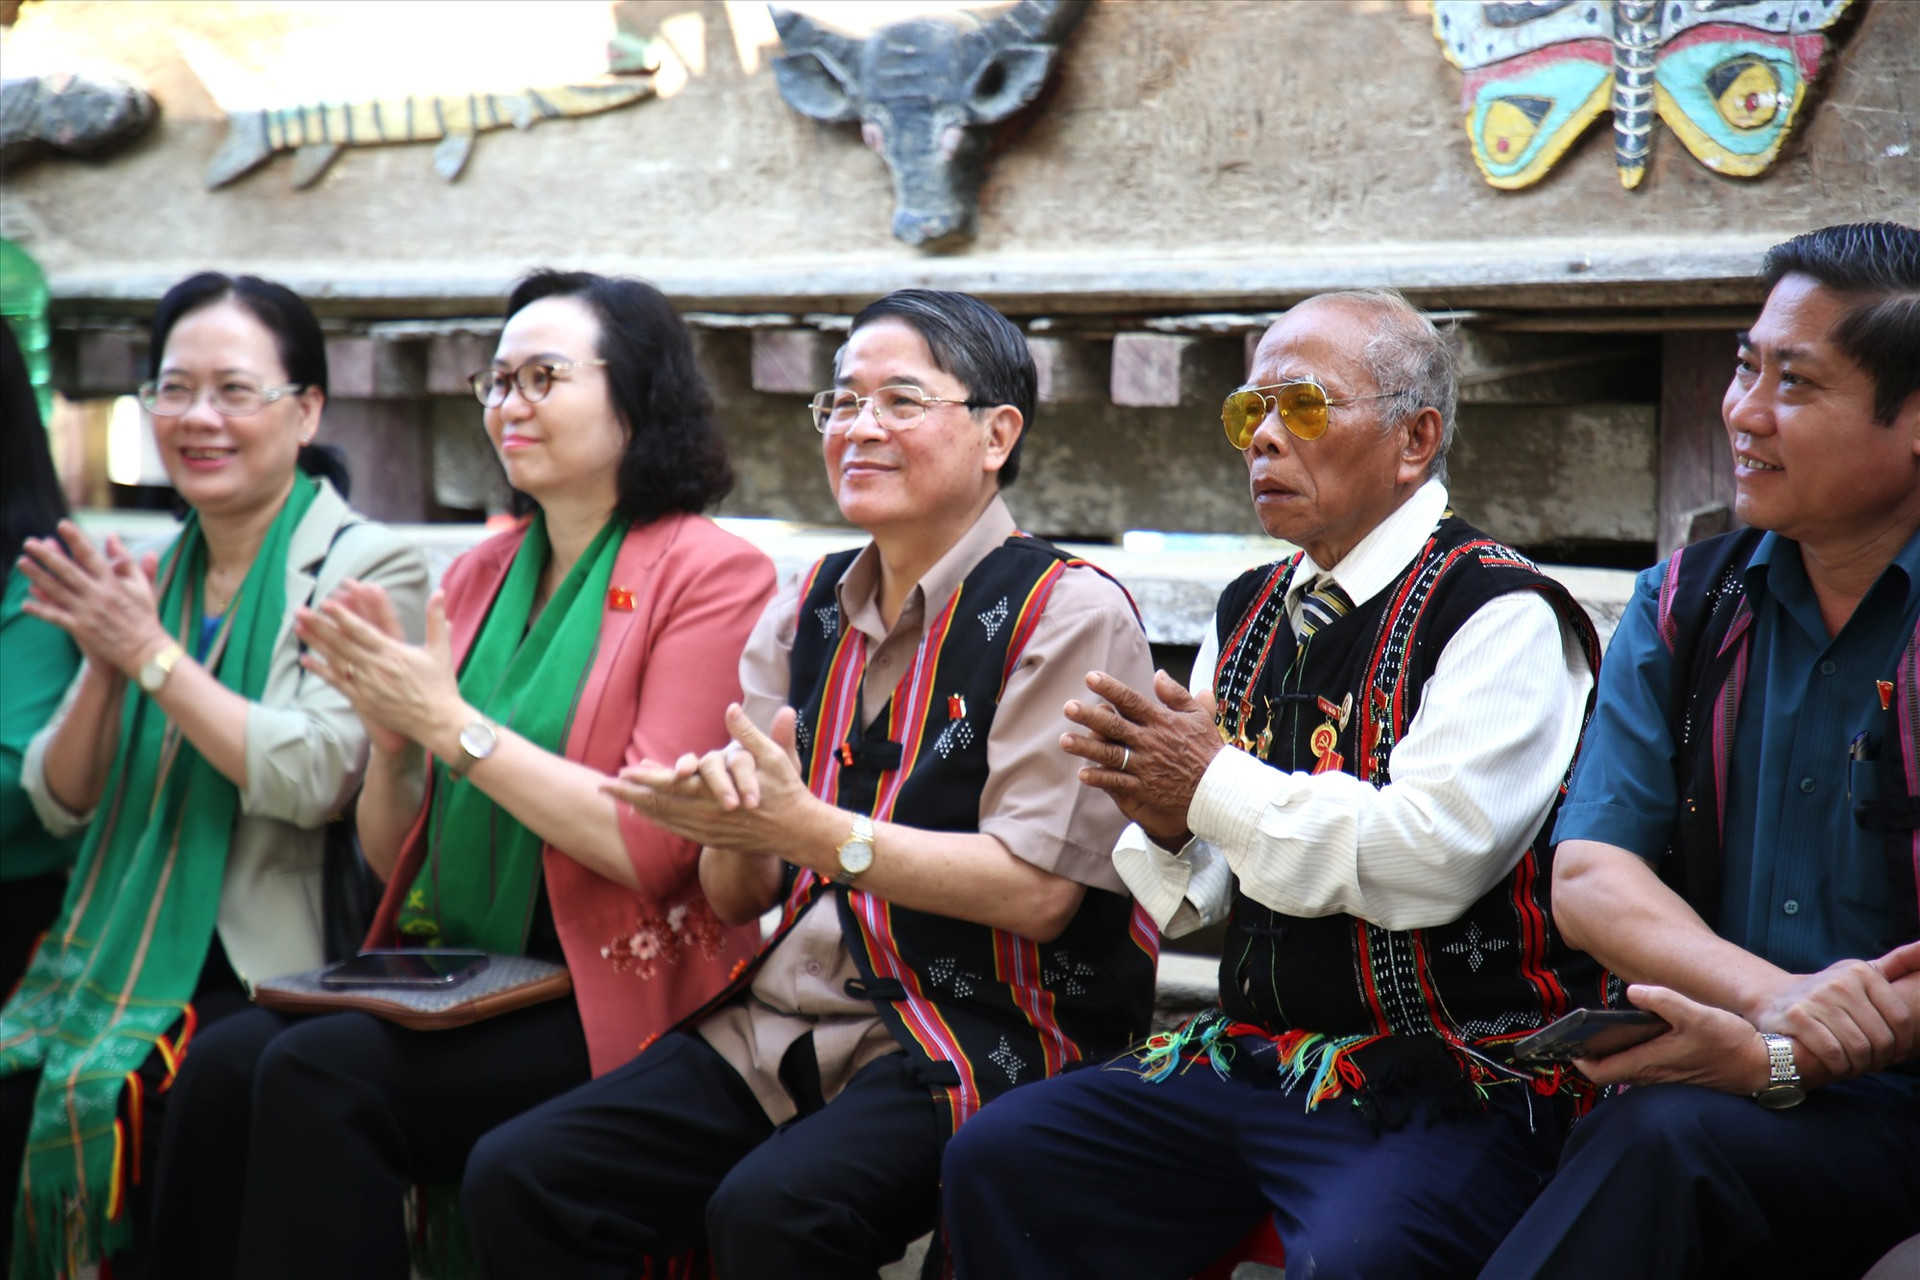 Phó Chủ tịch Quốc hội Nguyễn Đức Hải cùng đại biểu vui cùng không gian văn hóa vùng cao. Ảnh: A.N